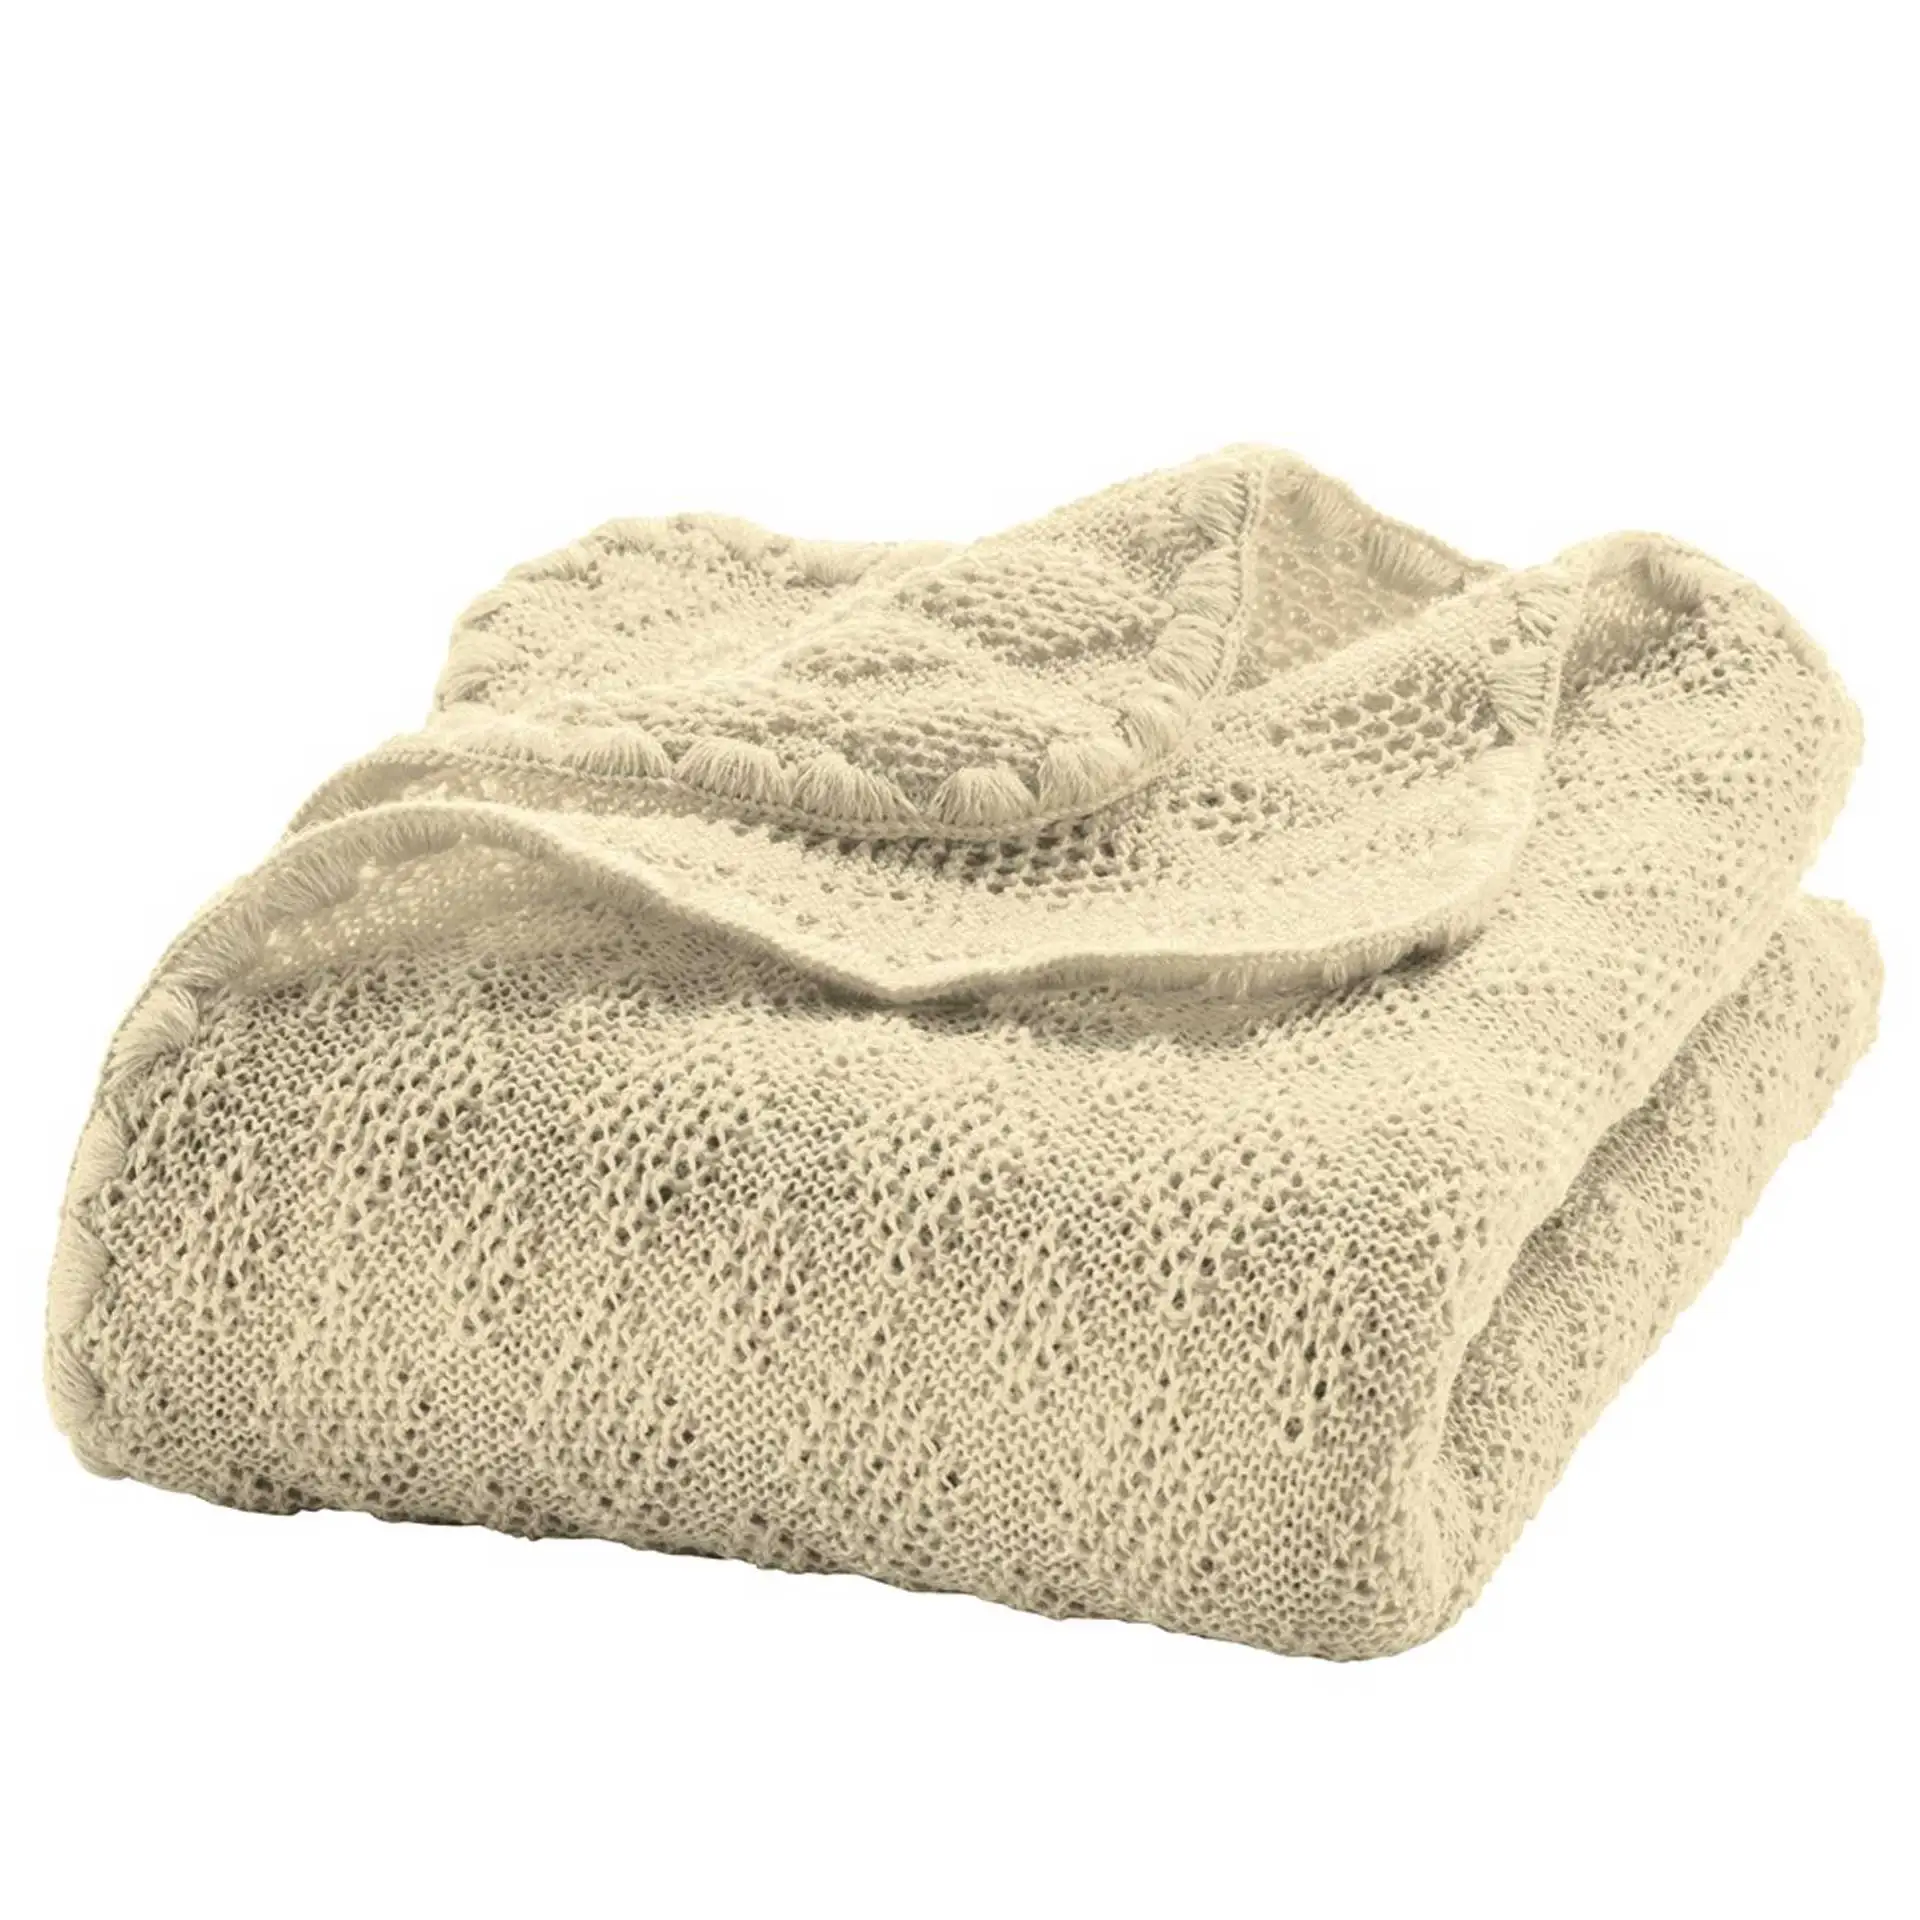 Woollen Baby Blanket